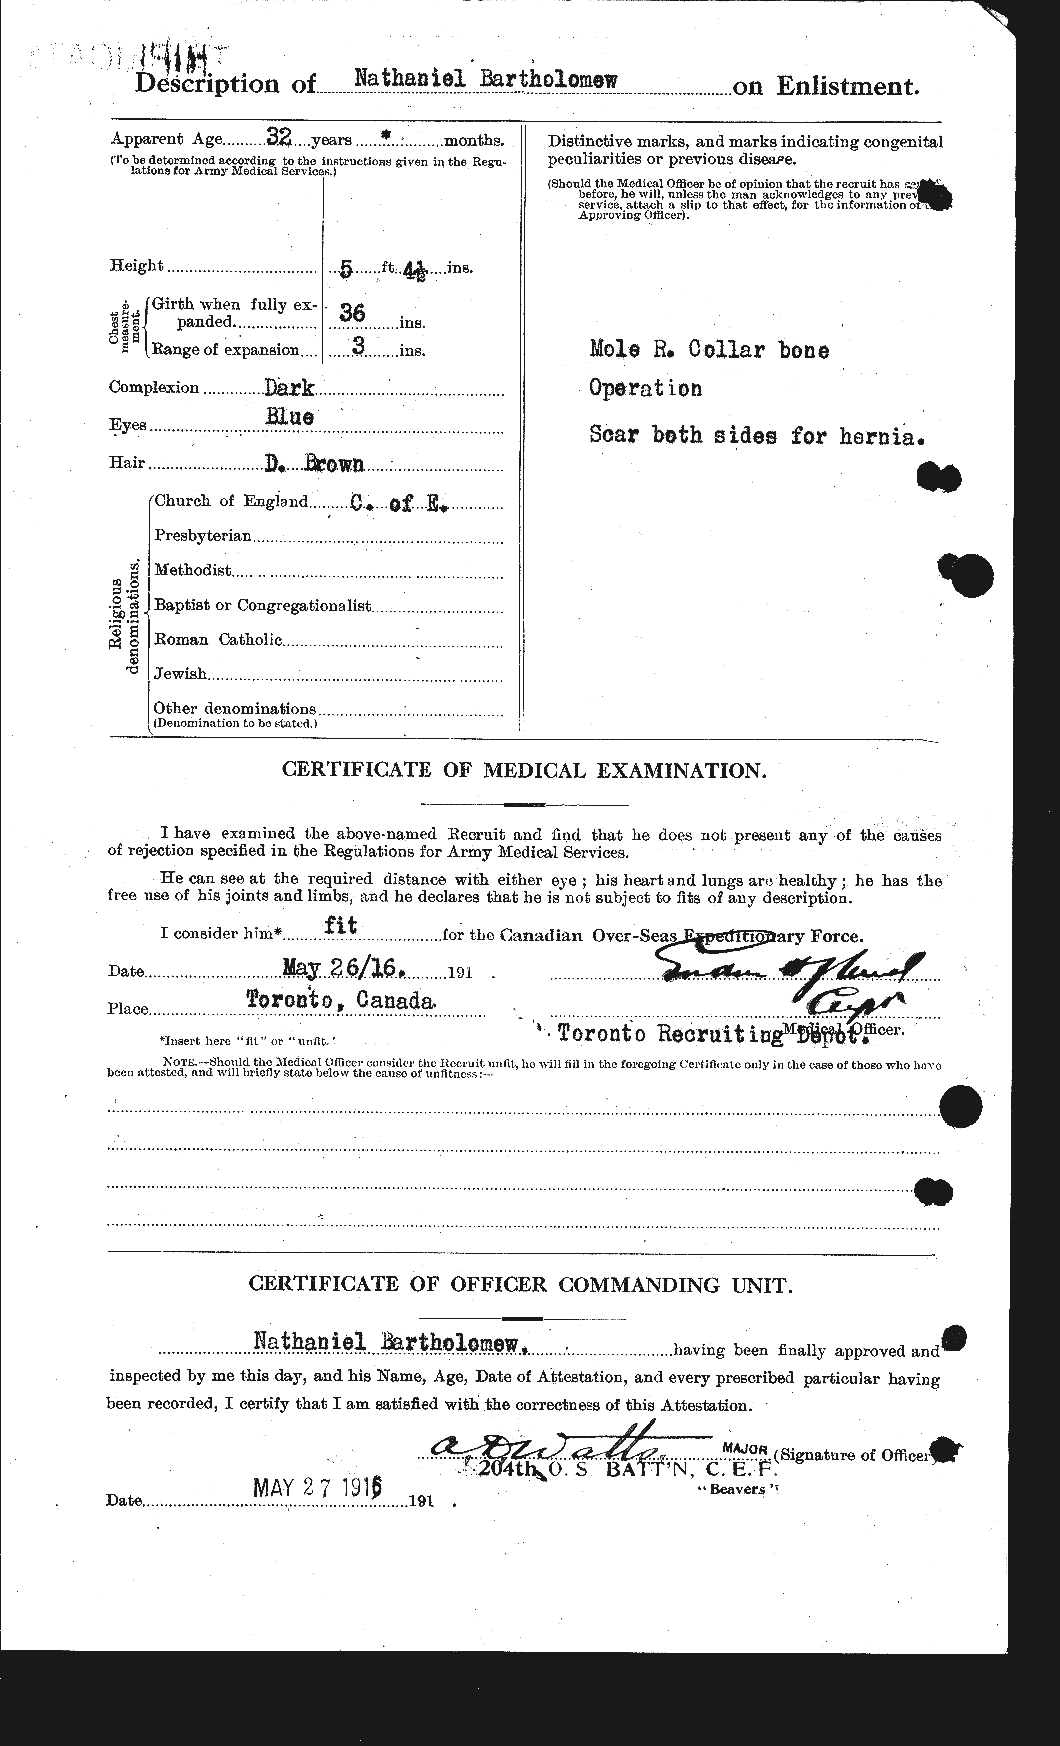 Dossiers du Personnel de la Première Guerre mondiale - CEC 229115b